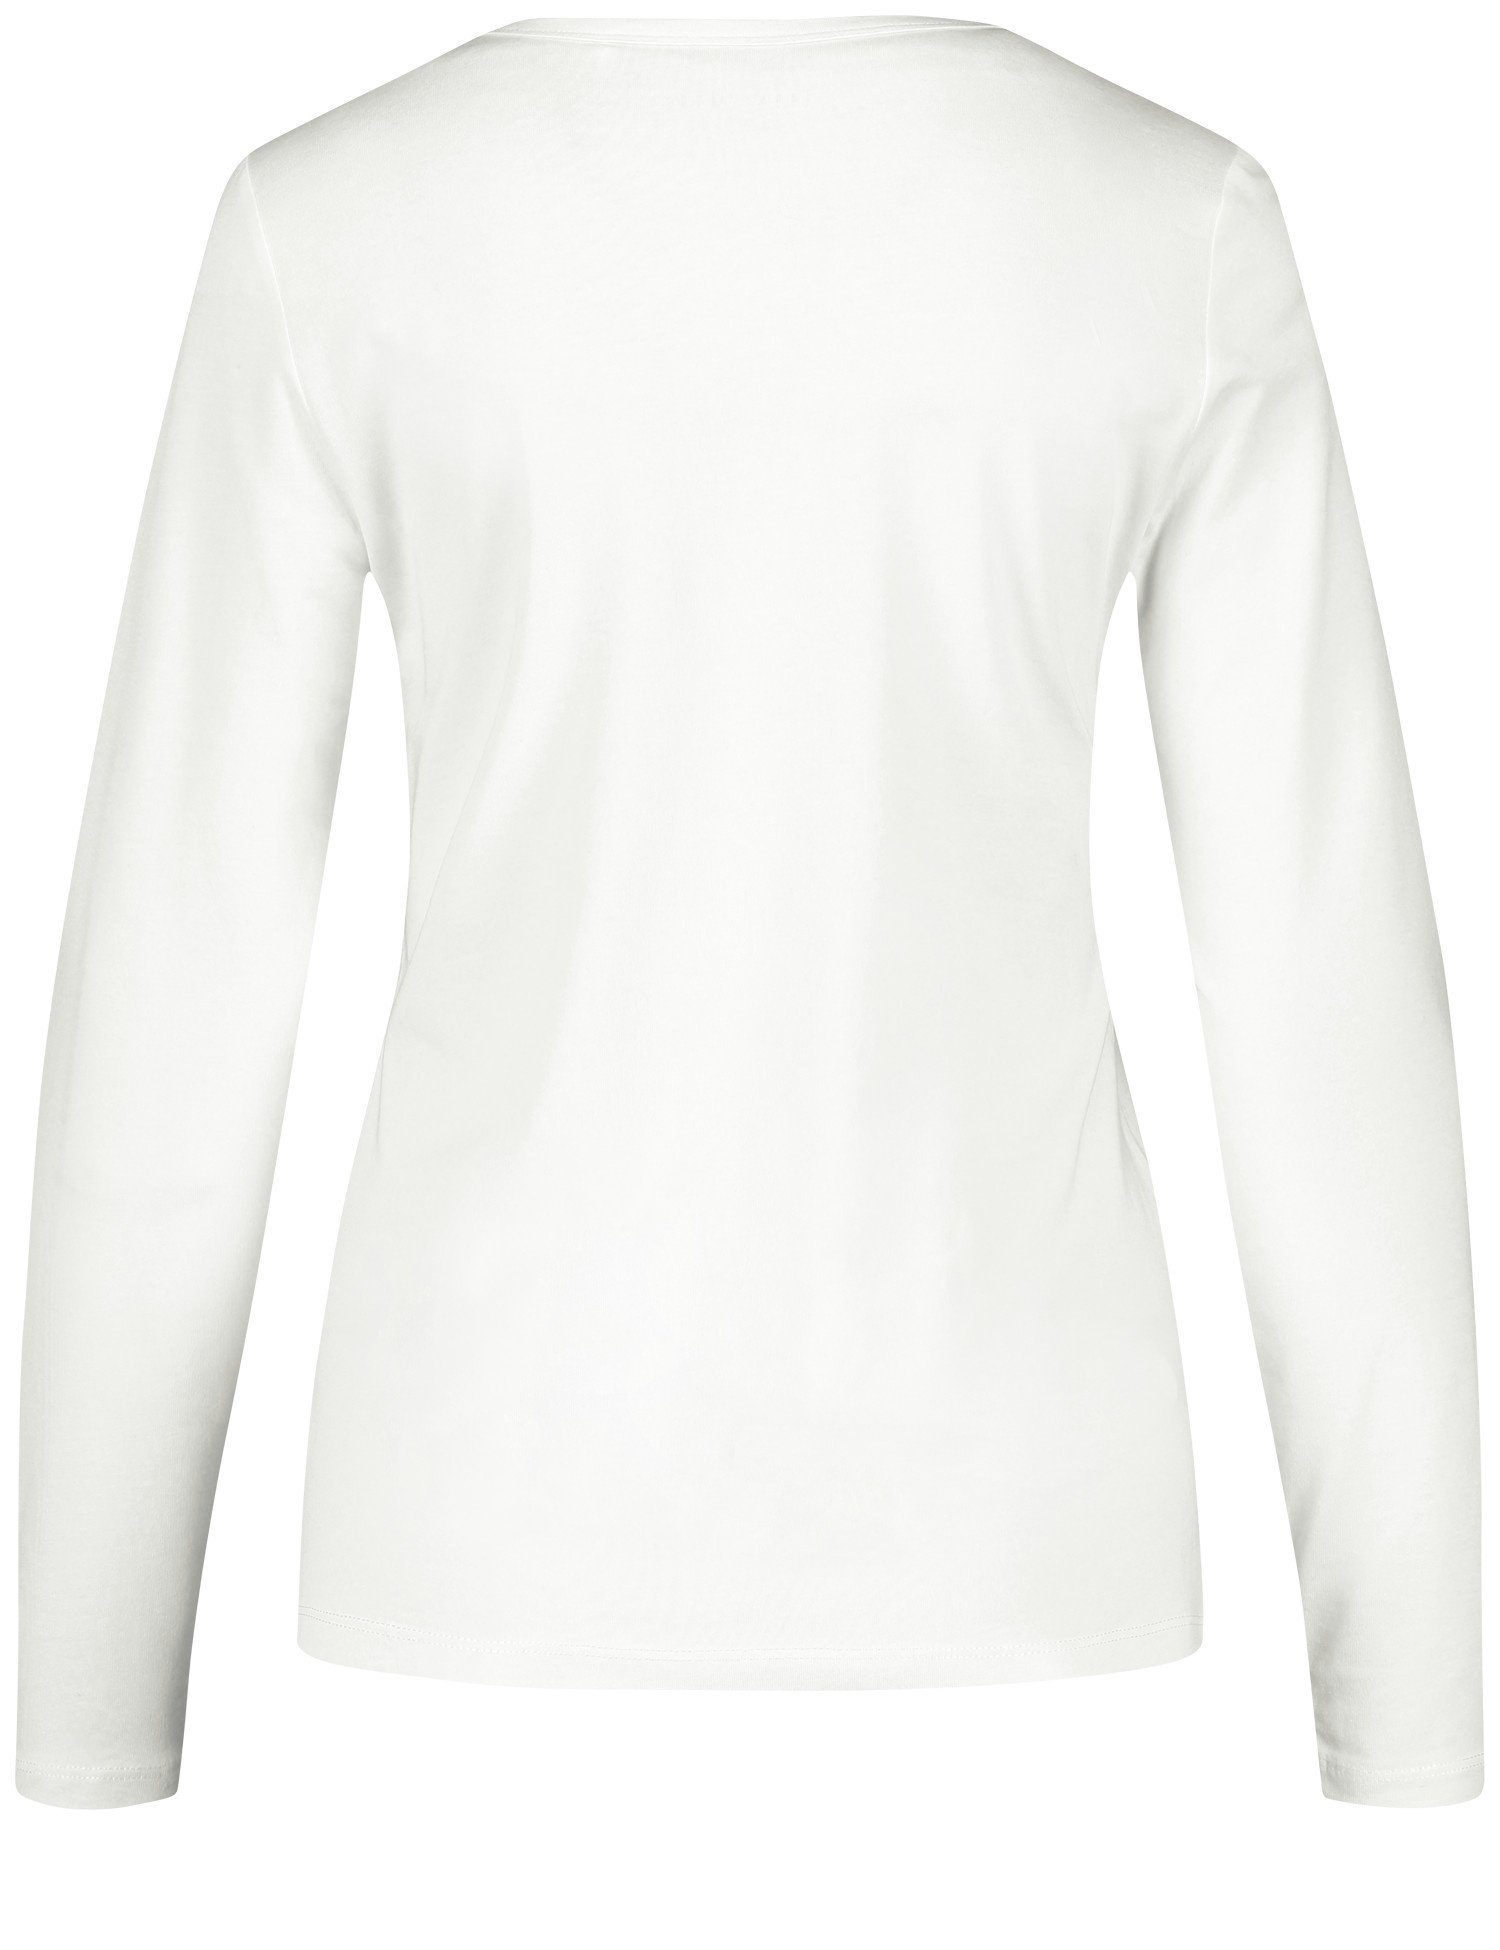 WEBER GERRY Langarmshirt Off-white mit Langarmshirt Basic Stretchkomfort